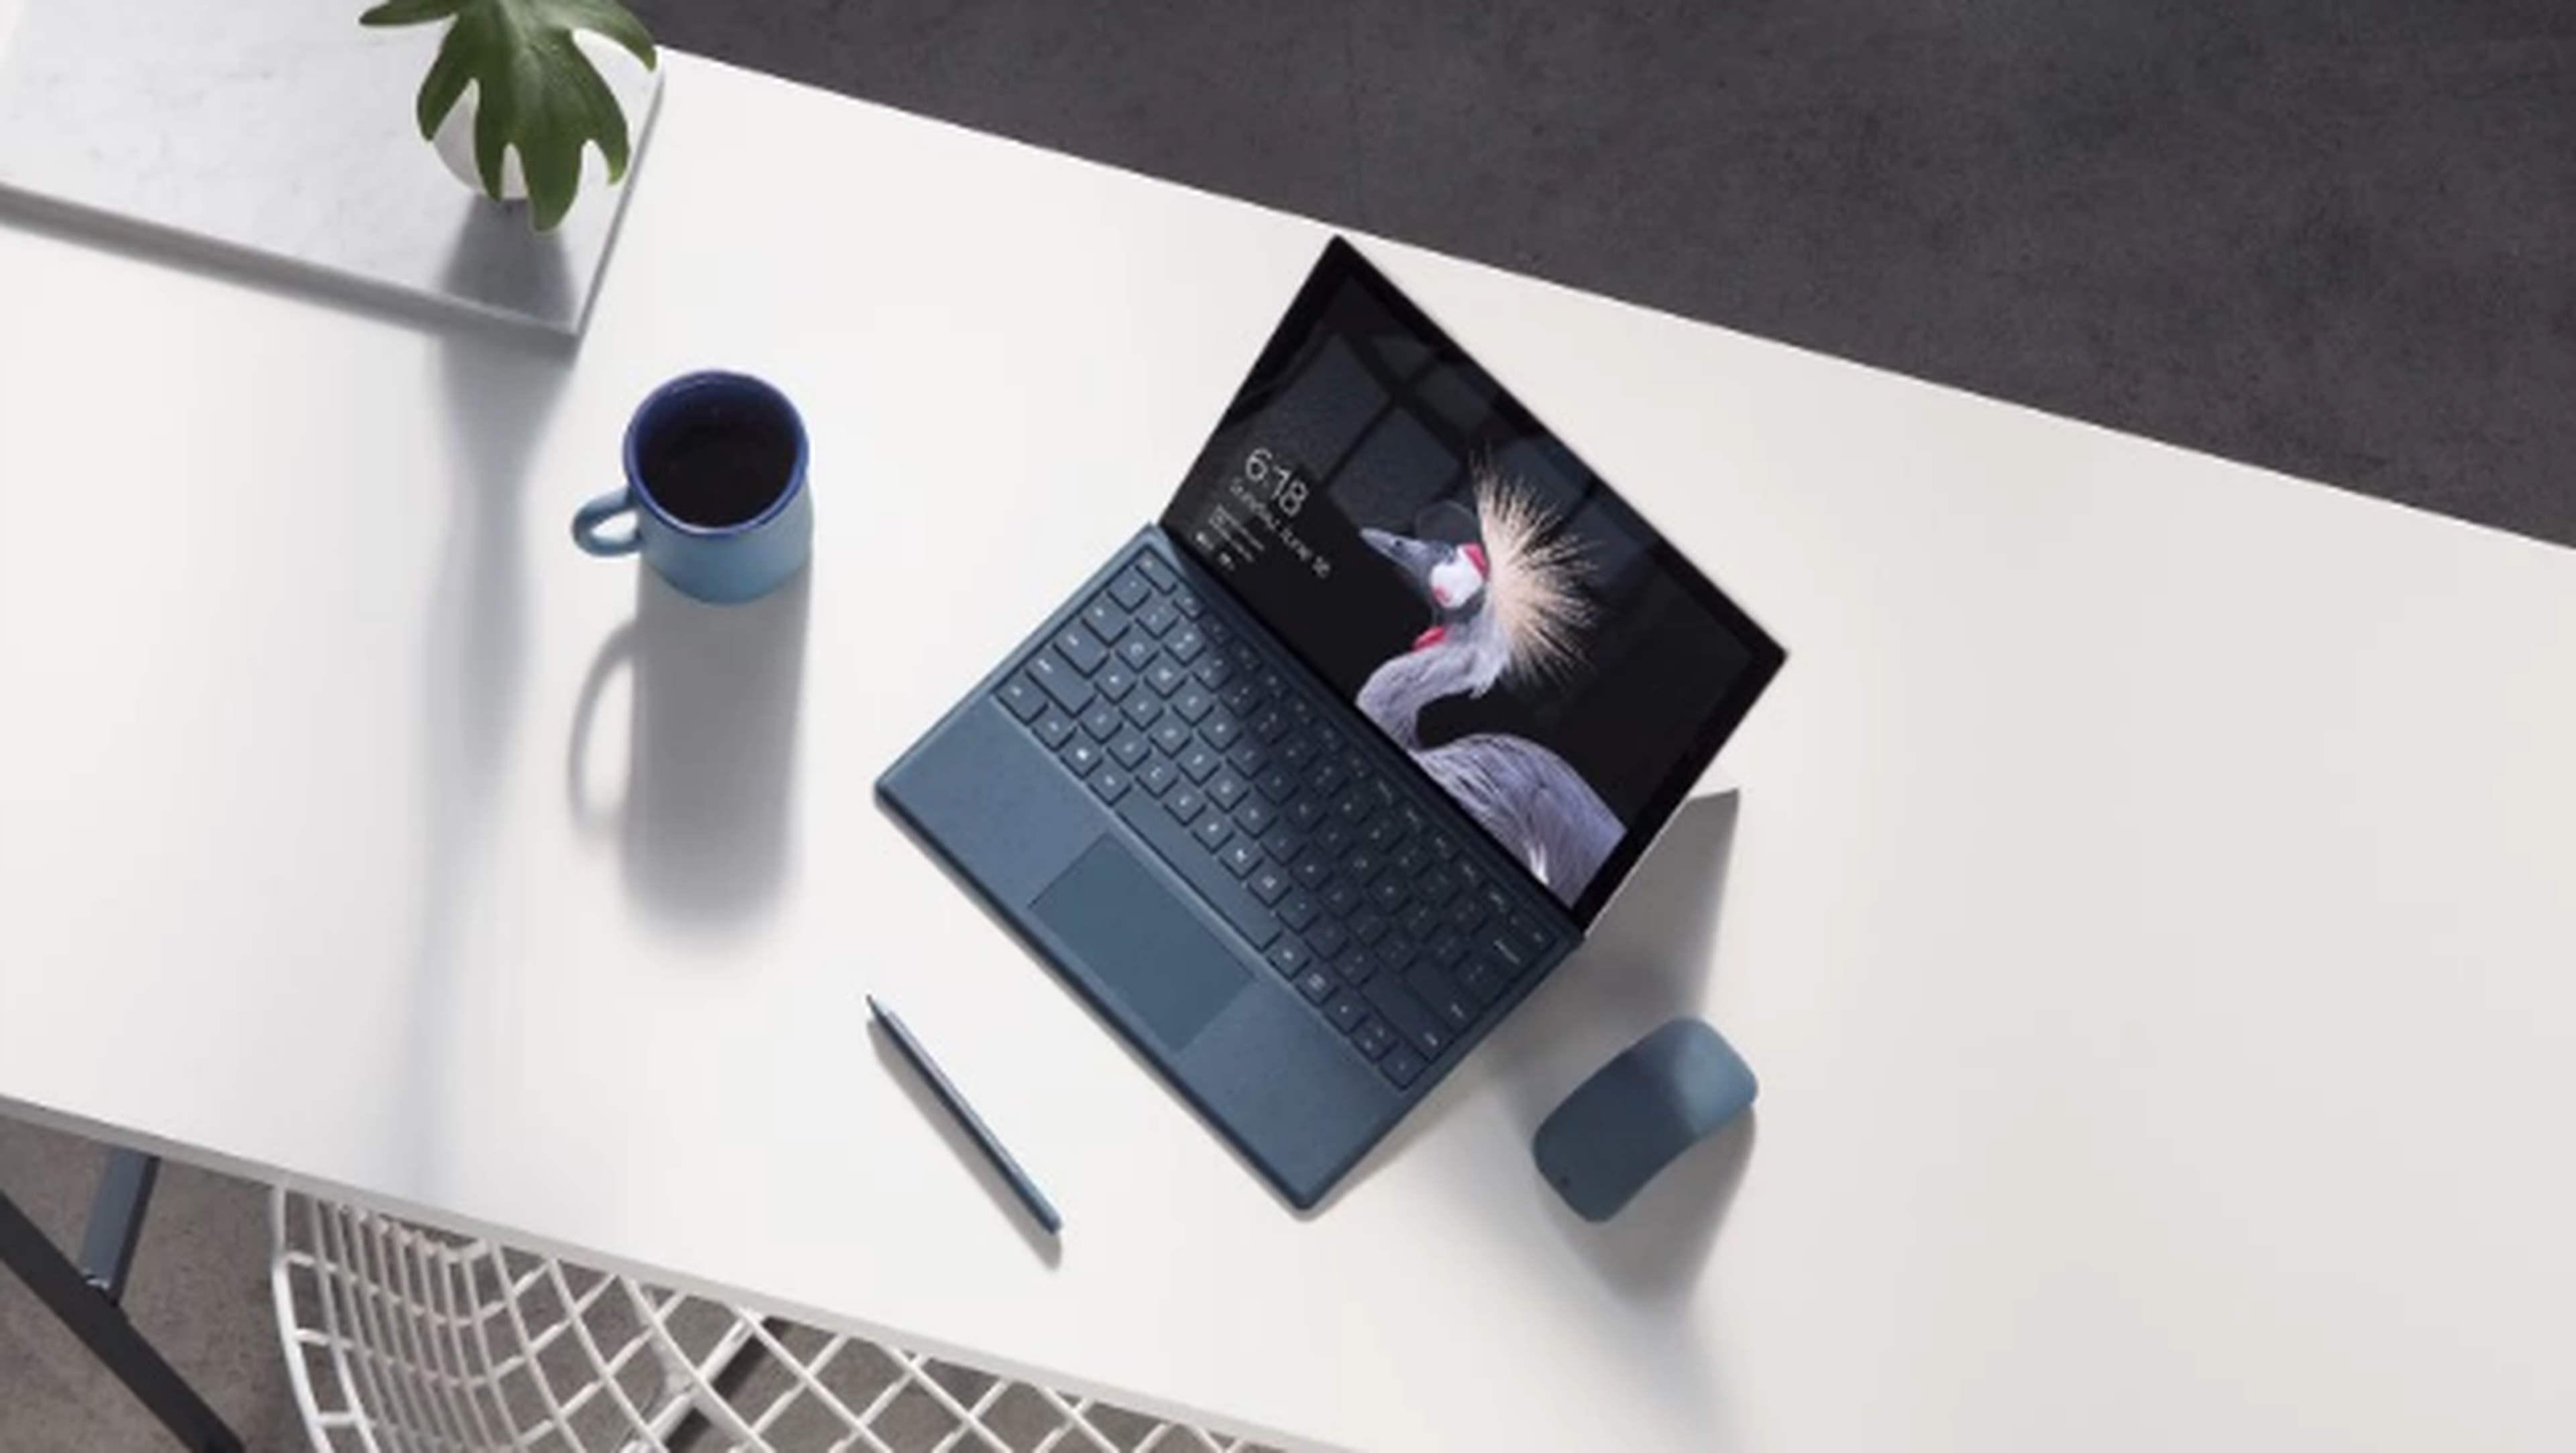 Oferta de aniversario para comprar la Microsoft Surface Pro al mejor precio.